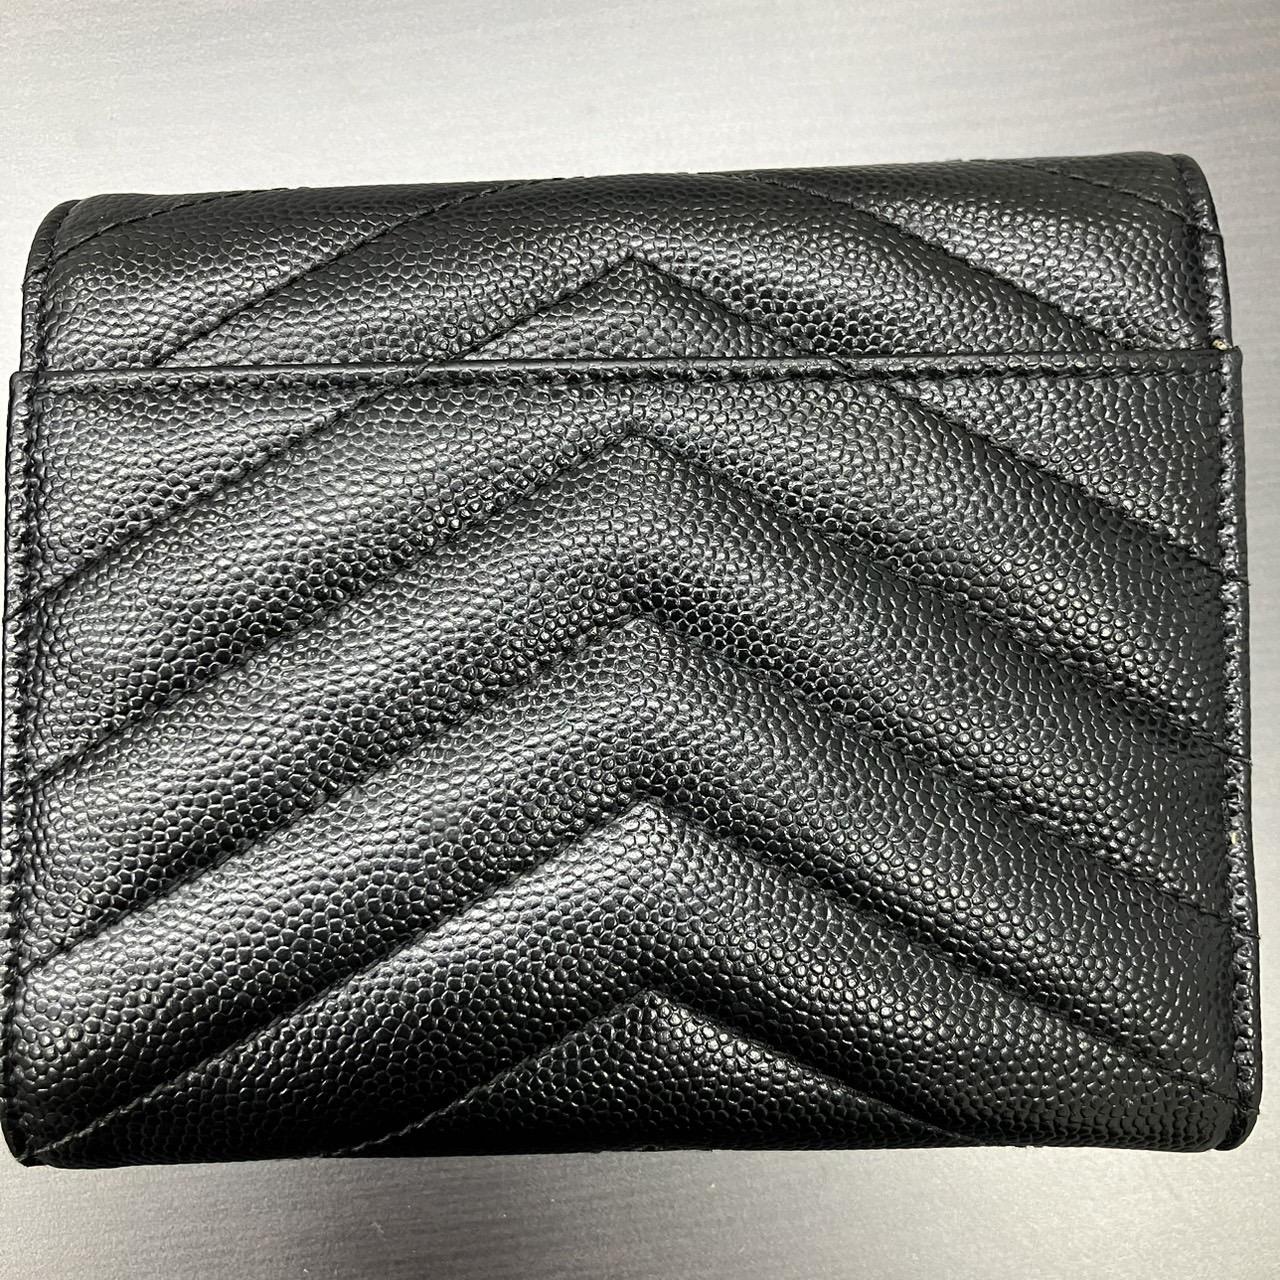  YSL サンローランパリ 403943 BOW01 1000 コンパクトウォレット 三つ折り財布 ブラック